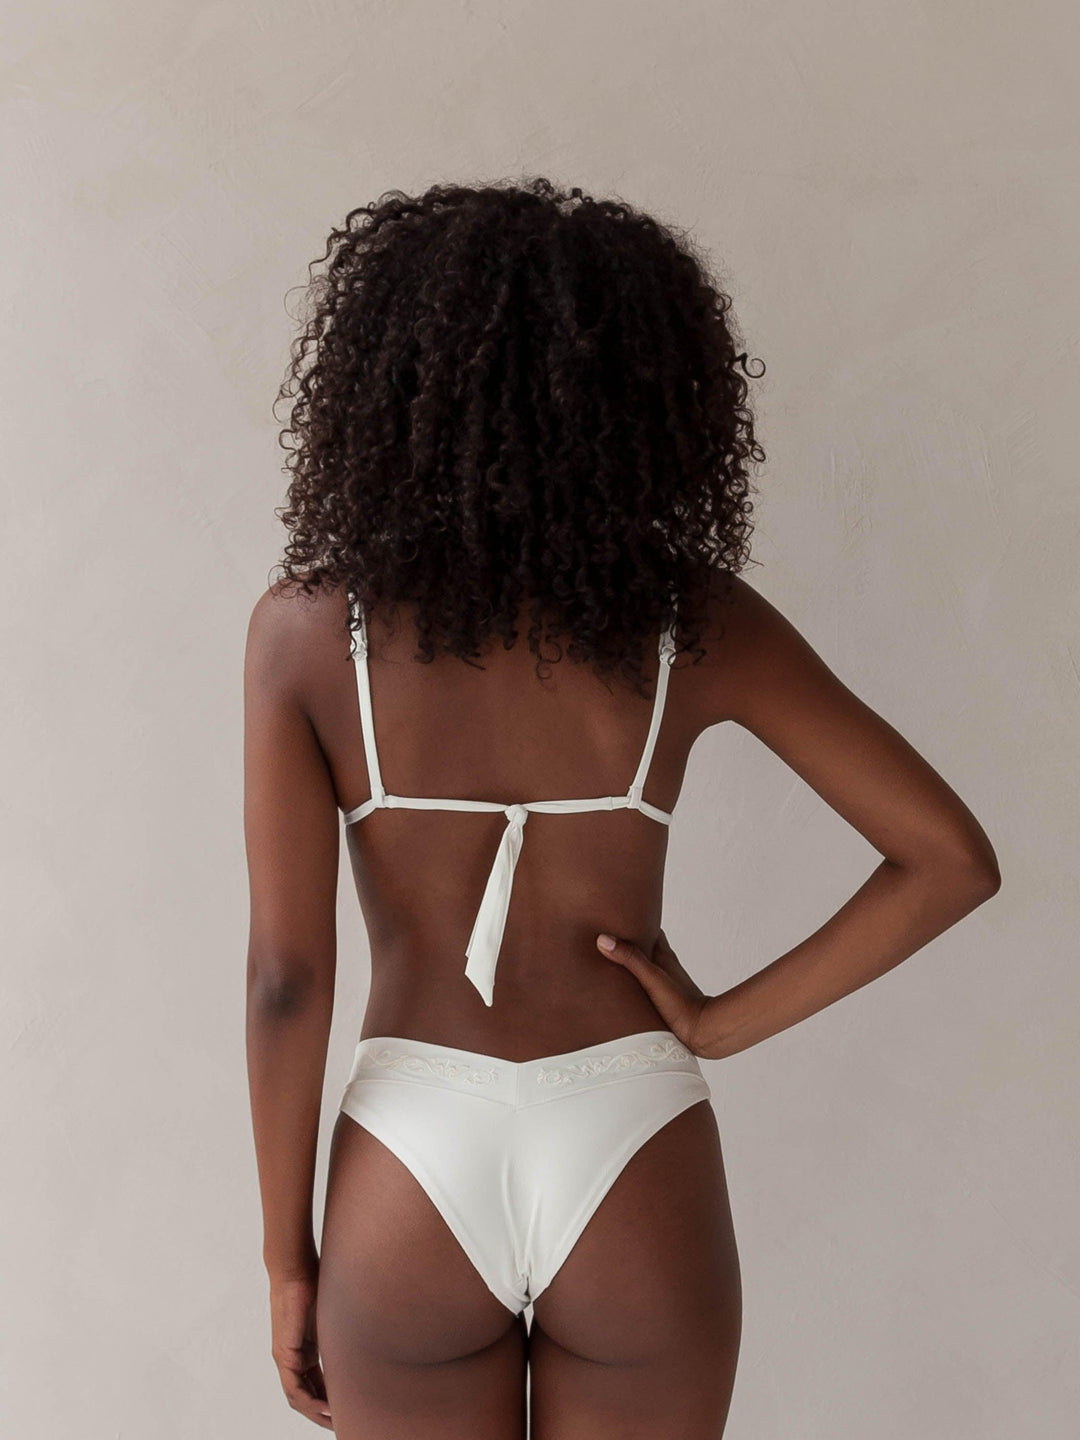 Bikini top triangle and cheeky bikini brazilian tanga bottom in white with rib fabric & embroidery, woman backside